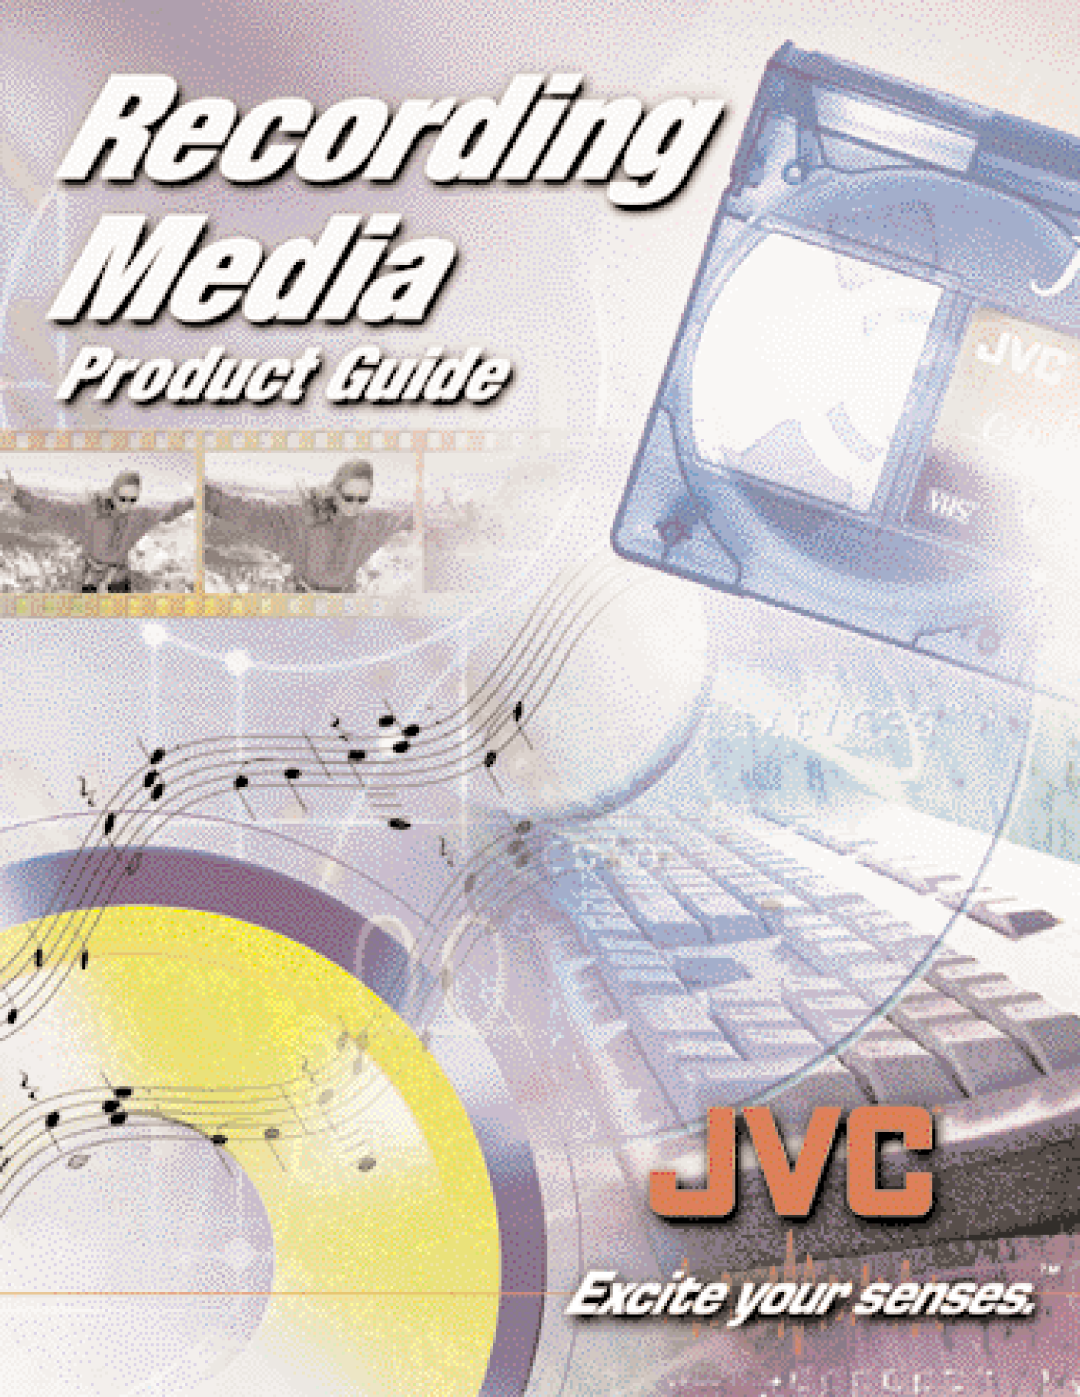 JVC TC35KL3P manual 